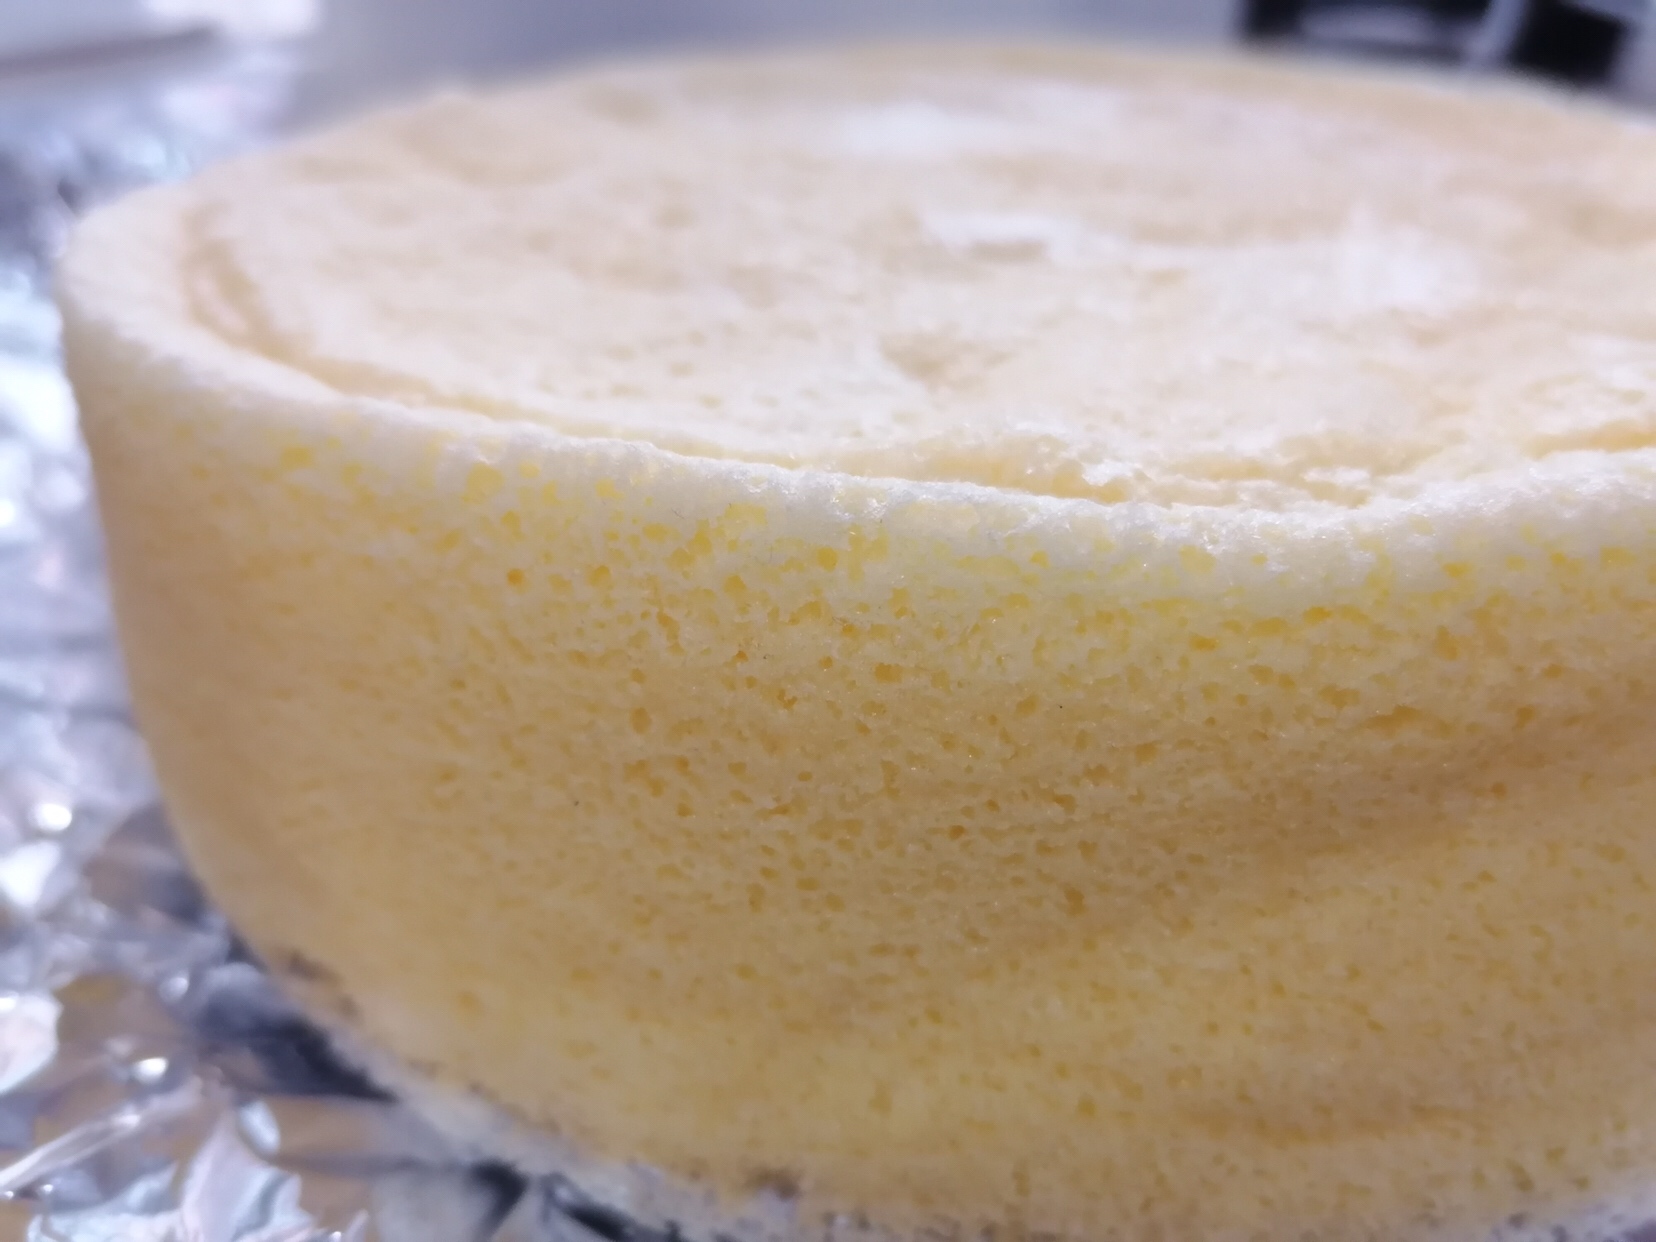 蒸芝士蛋糕（消耗芝士片）不用烤箱不用奶油奶酪制作简单奶香浓郁蒸蛋糕🍰好吃不上火